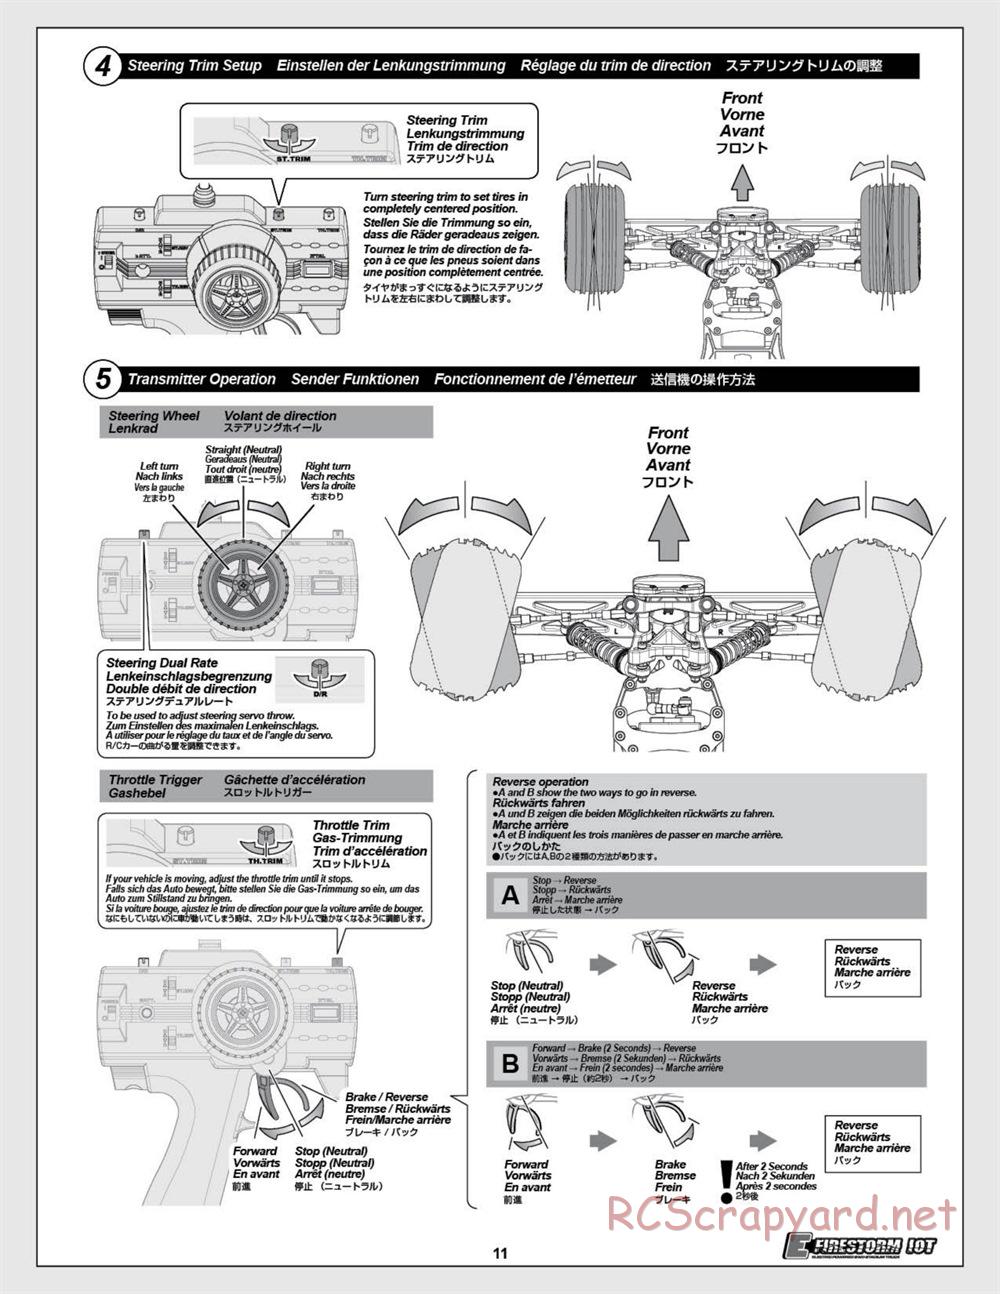 HPI - E-Firestorm 10T - Manual - Page 11